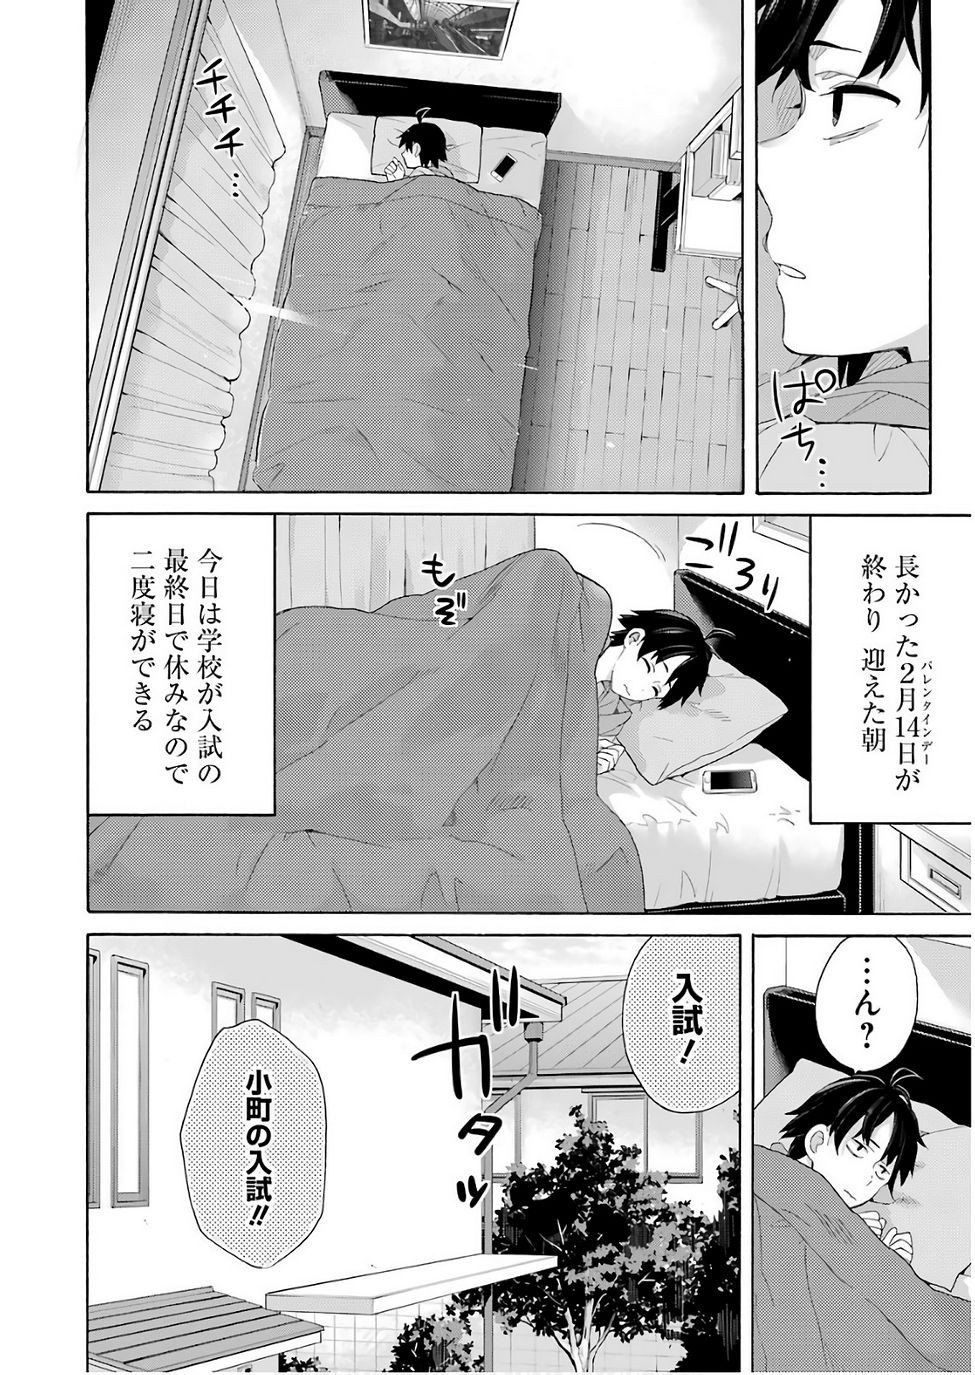 Yahari Ore no Seishun Rabukome wa Machigatte Iru. - Monologue - Chapter 63 - Page 2